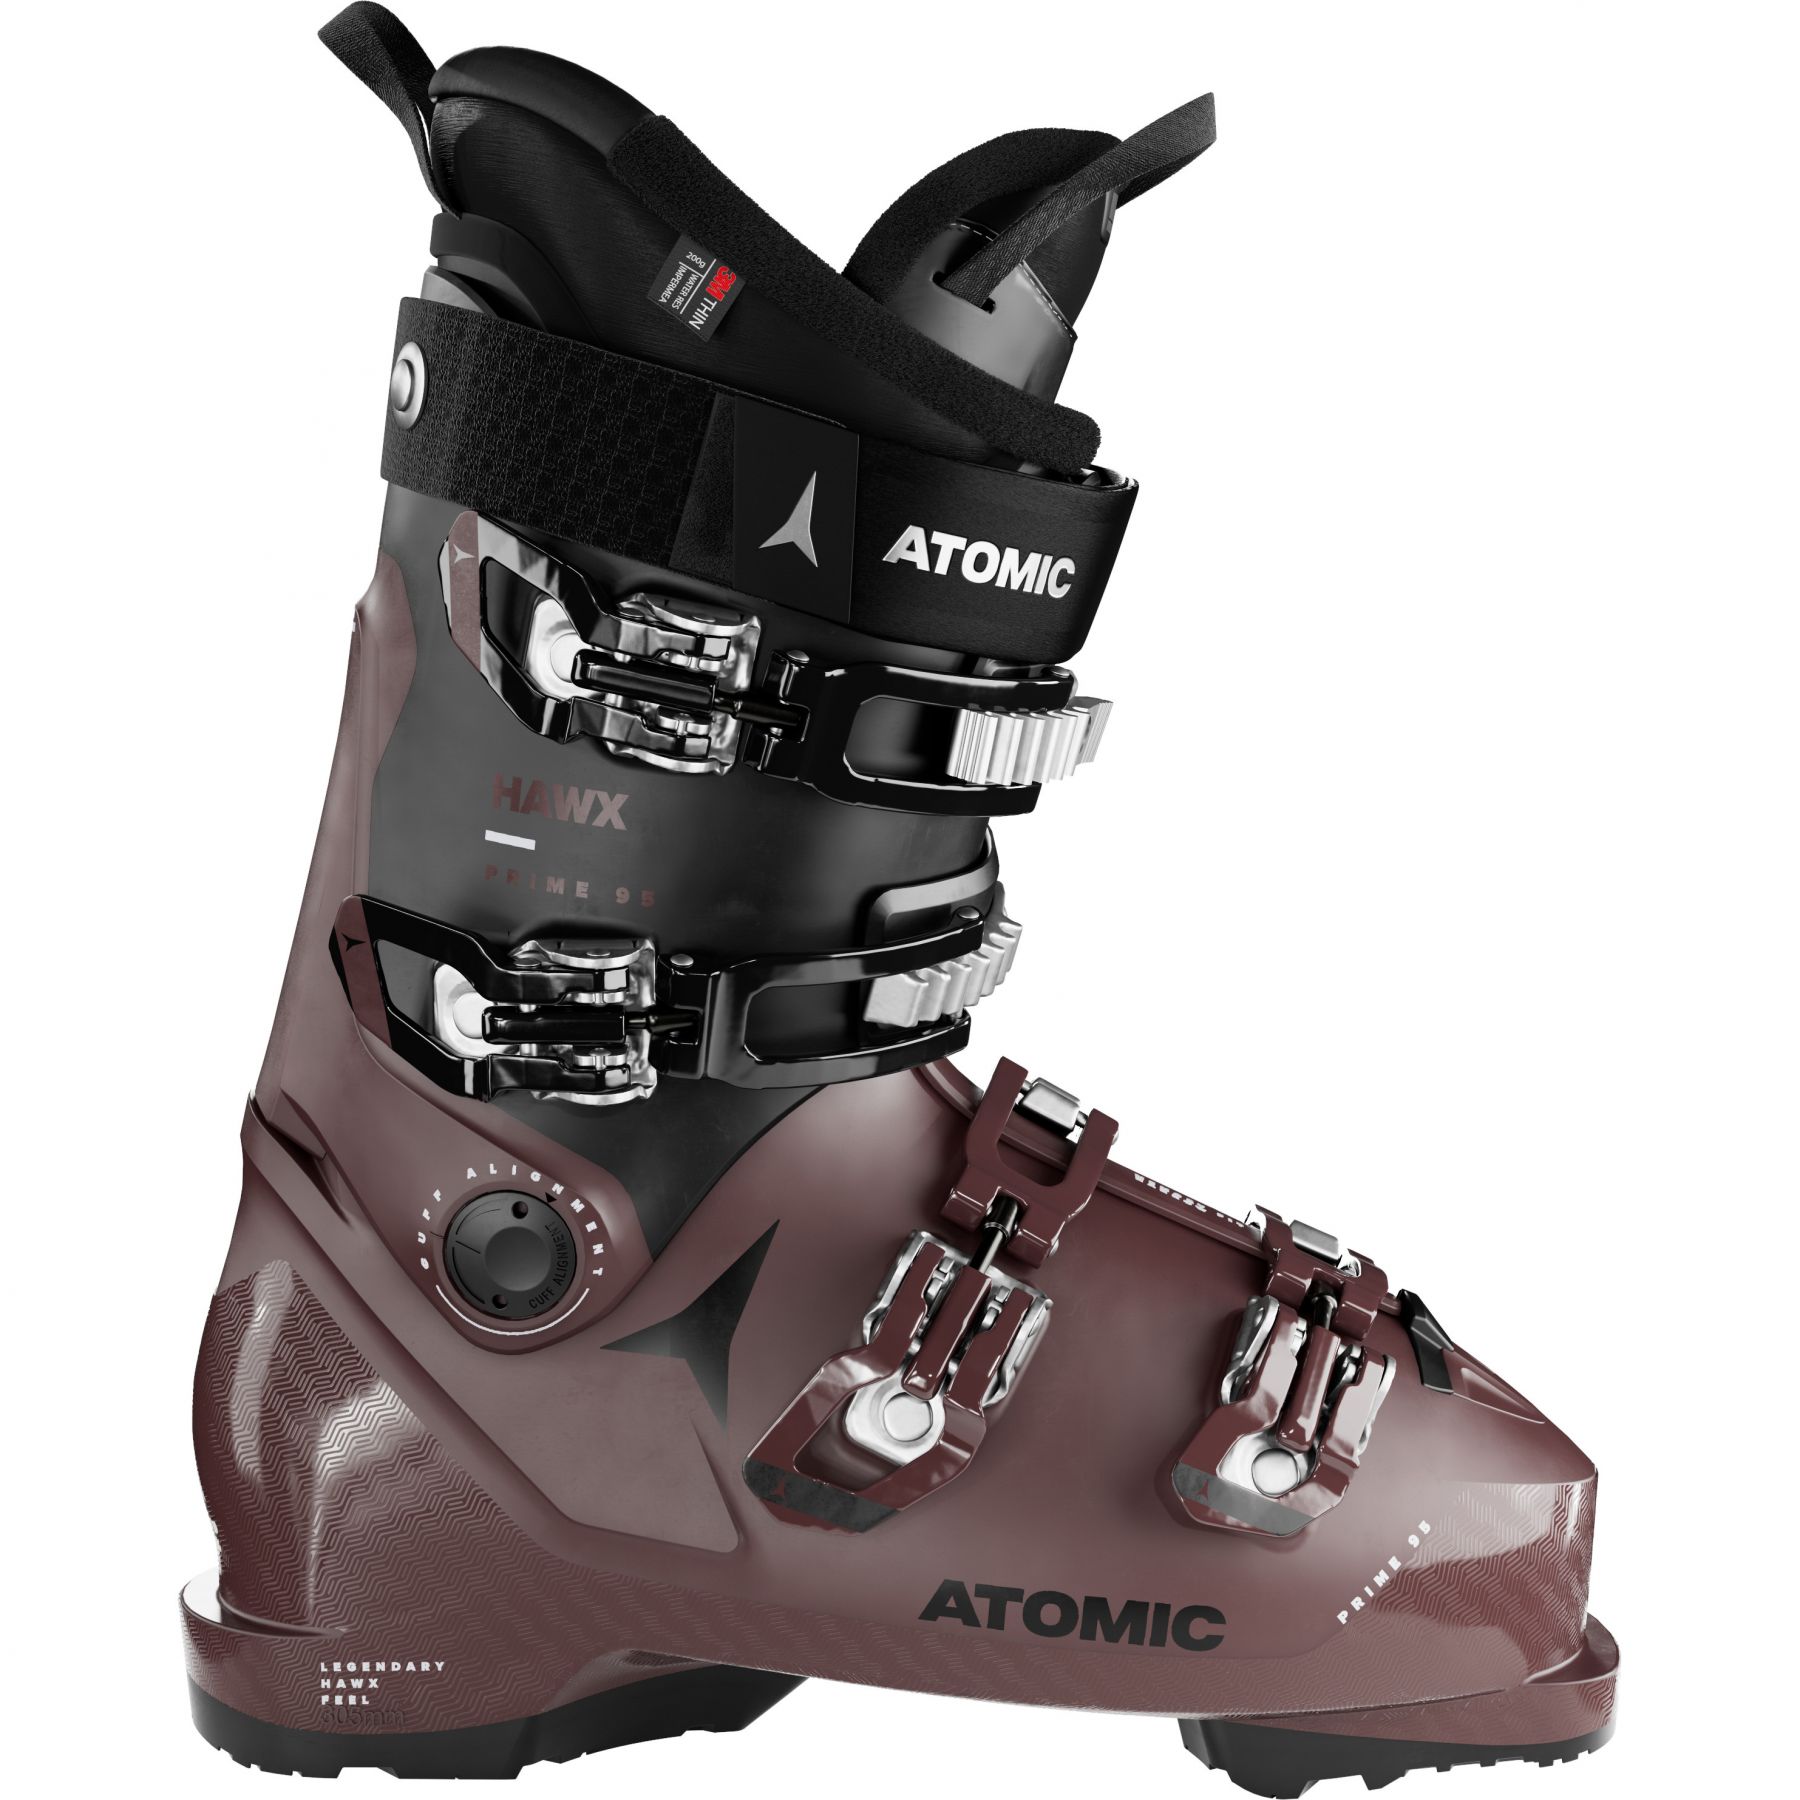 Brug Atomic Hawx Prime 95 W GW, skistøvler, dame, brun/sort til en forbedret oplevelse